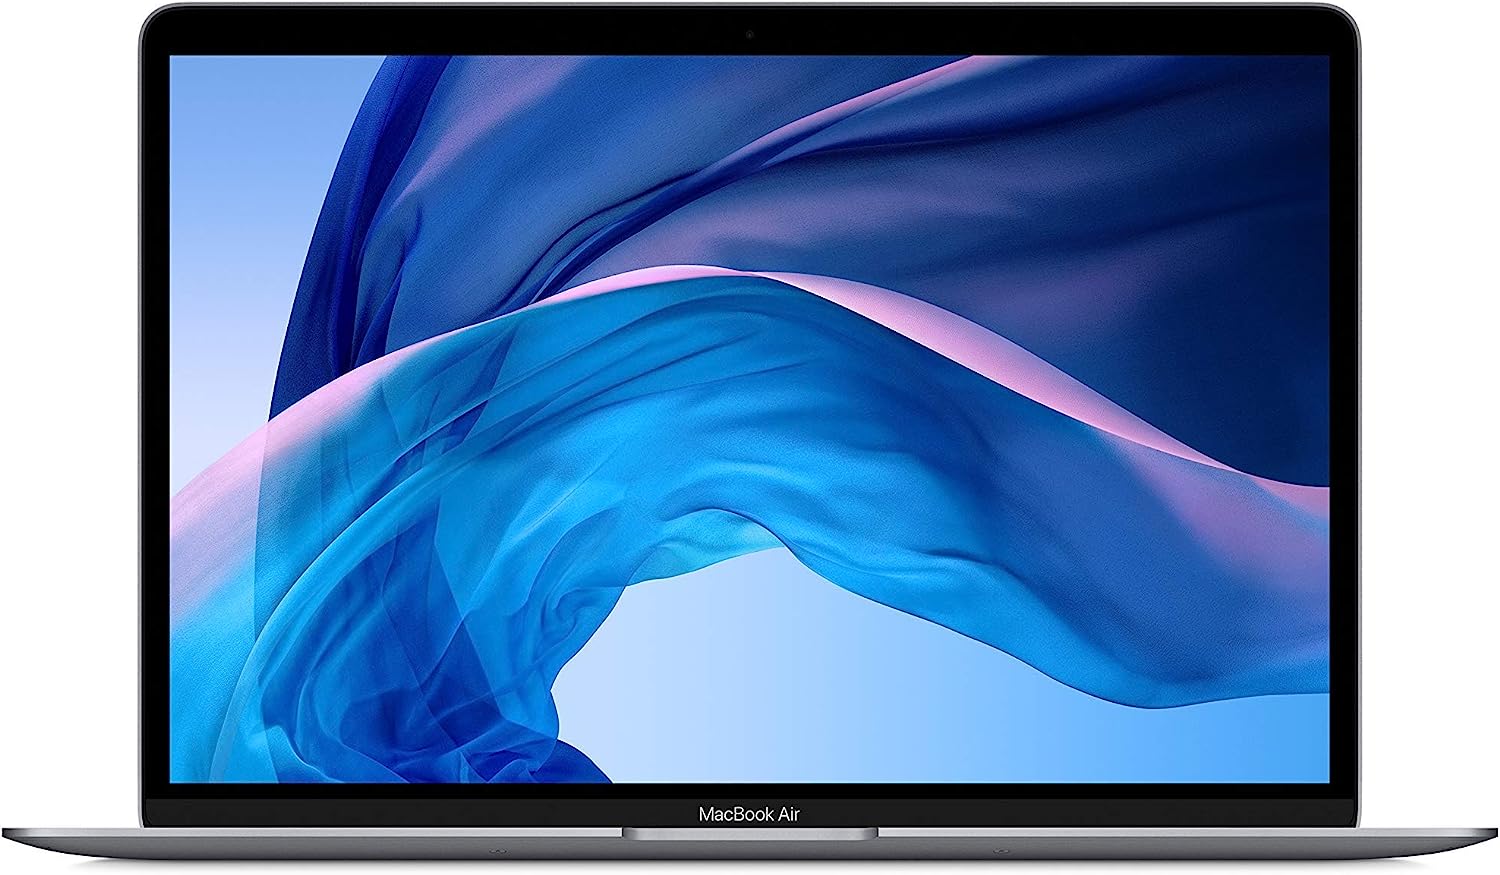 Restored Apple MacBook Air Core i5 1.6GHz 8GB RAM 128GB SSD 11 A1465 - MJVM2LL/A (Refurbished)